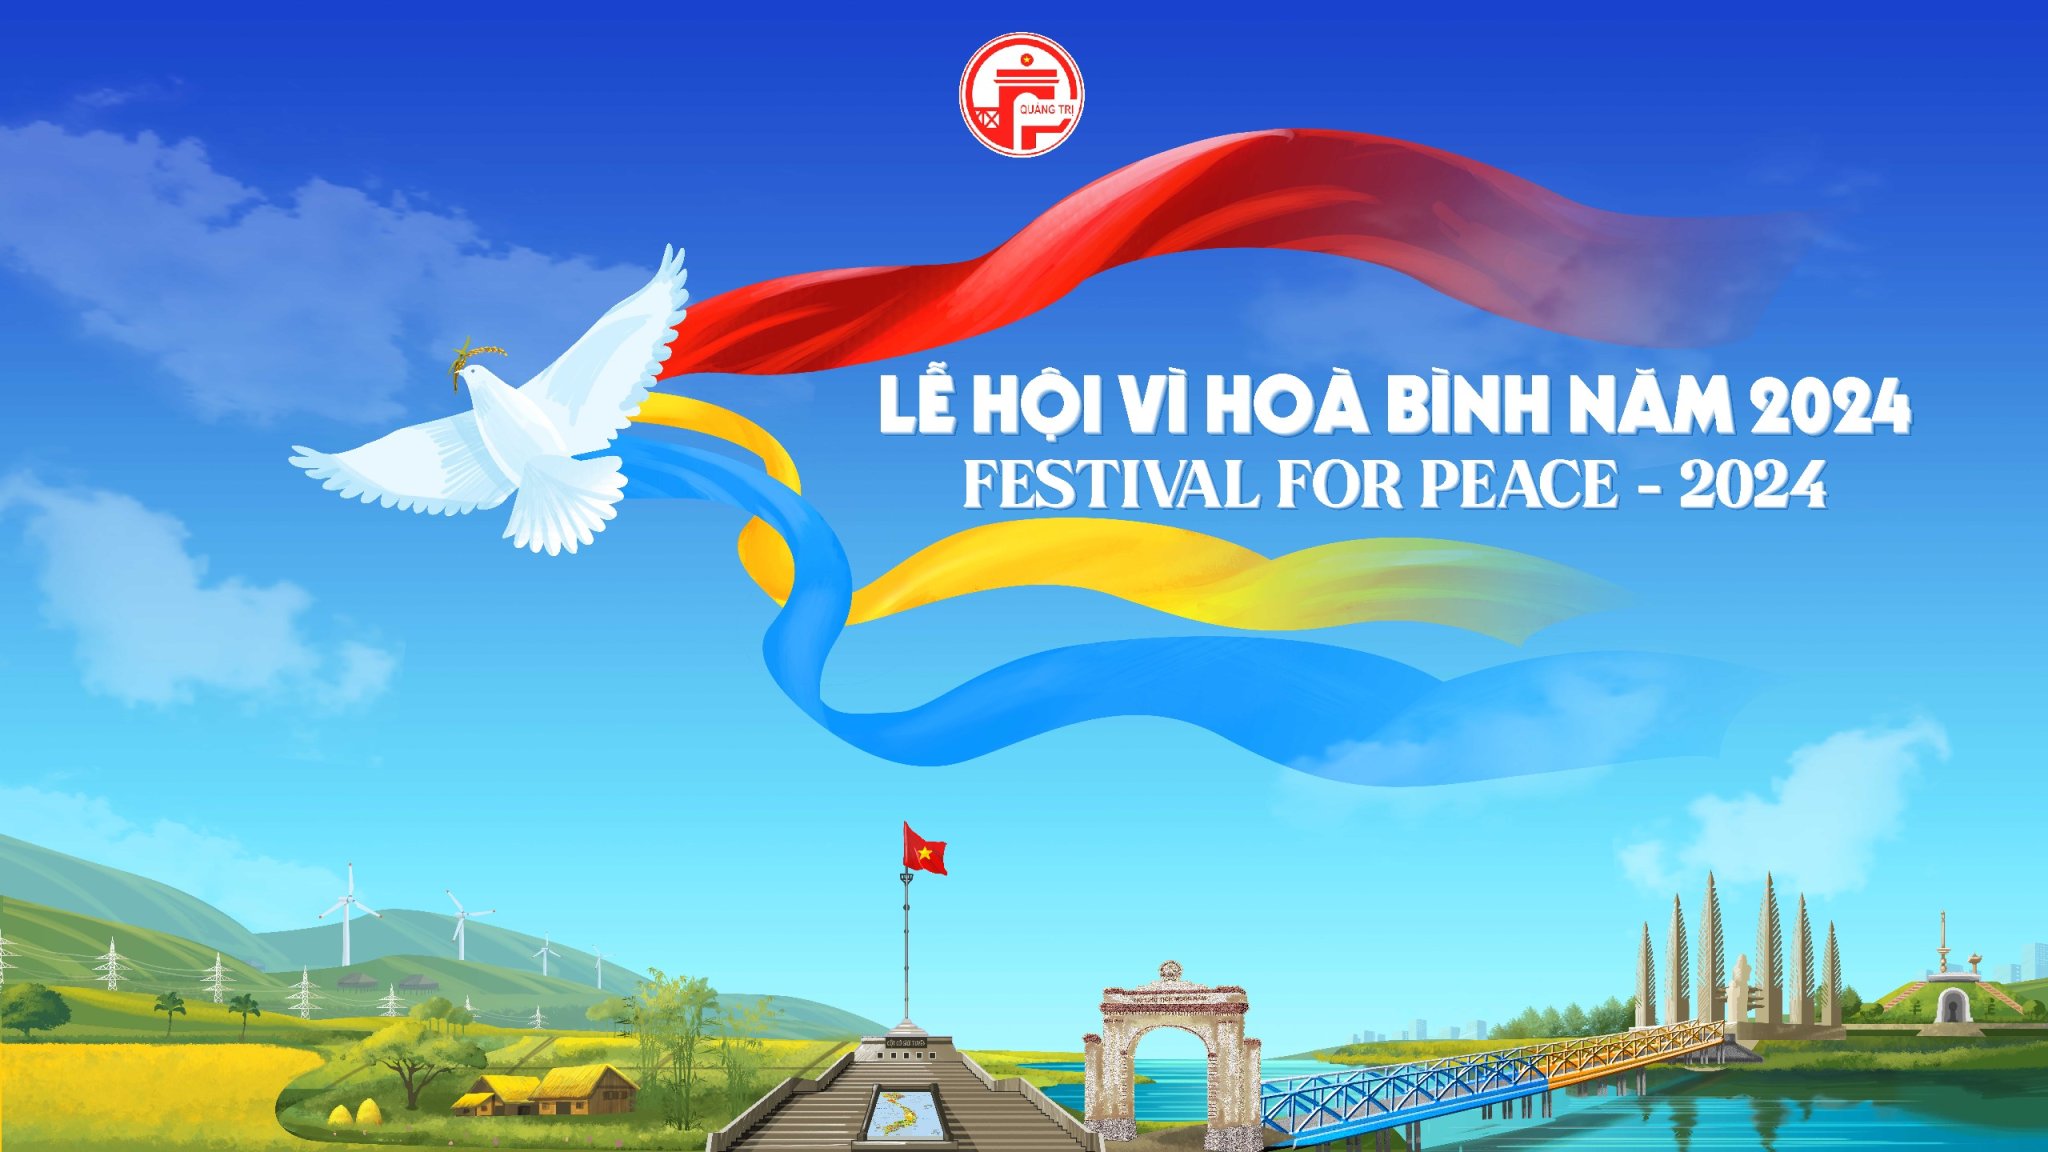 Công bố bộ nhận diện Lễ hội Vì hòa bình